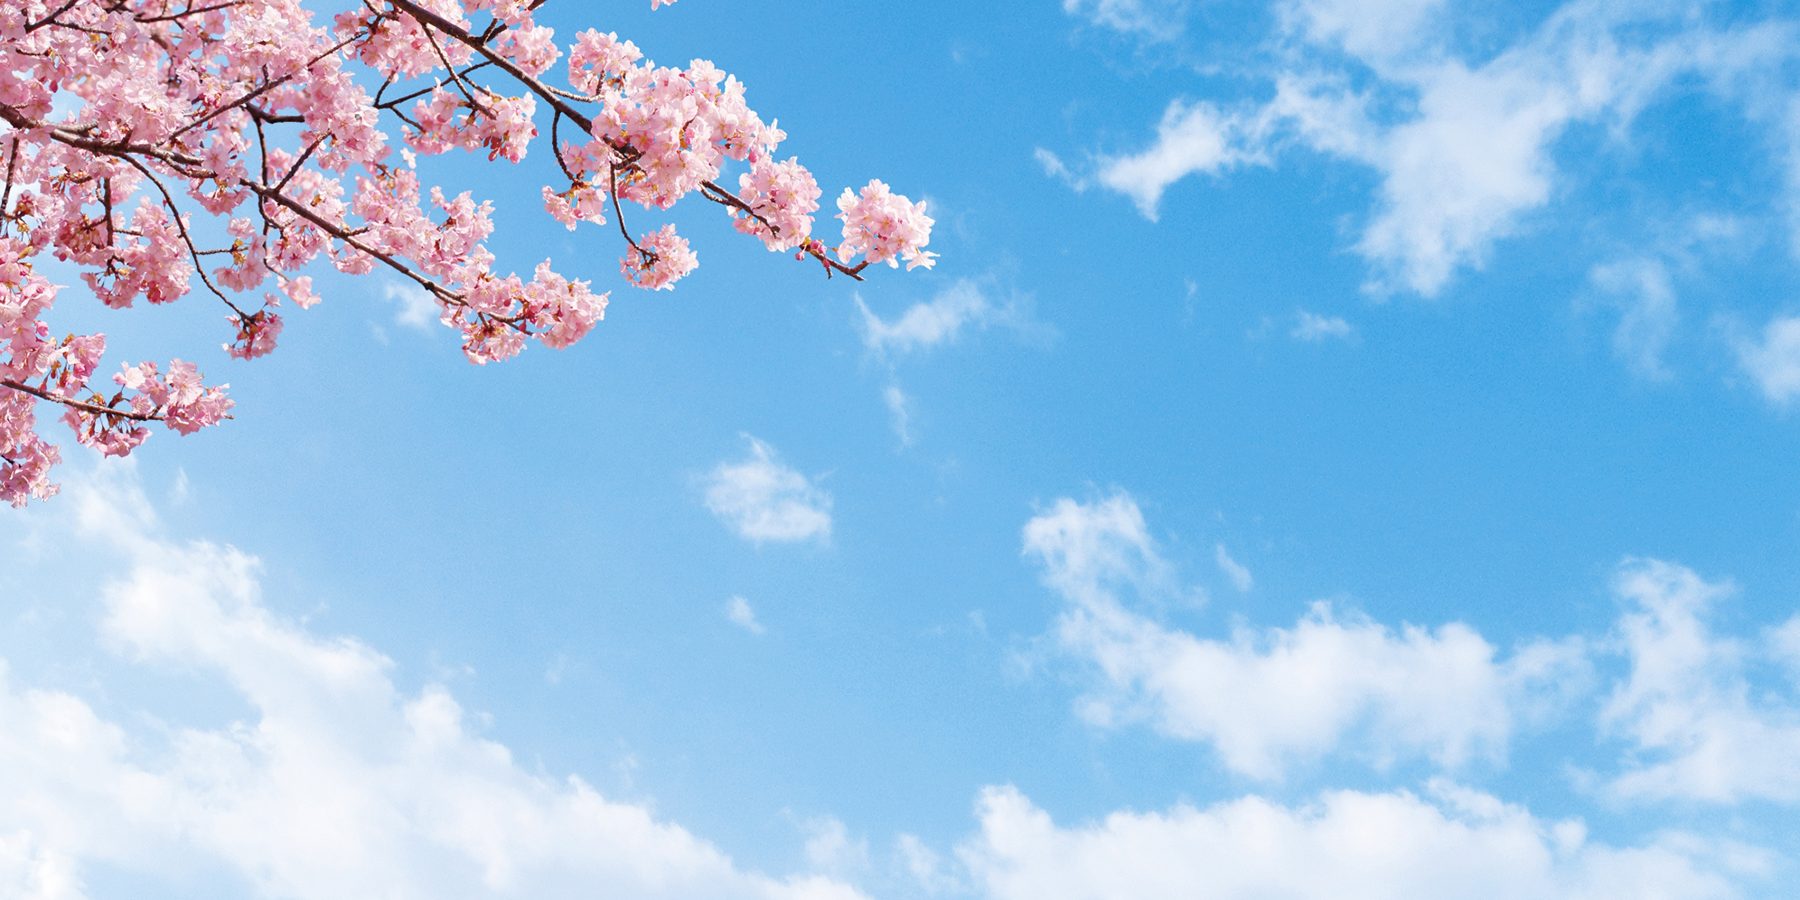 青空と桜で春のイメージ写真